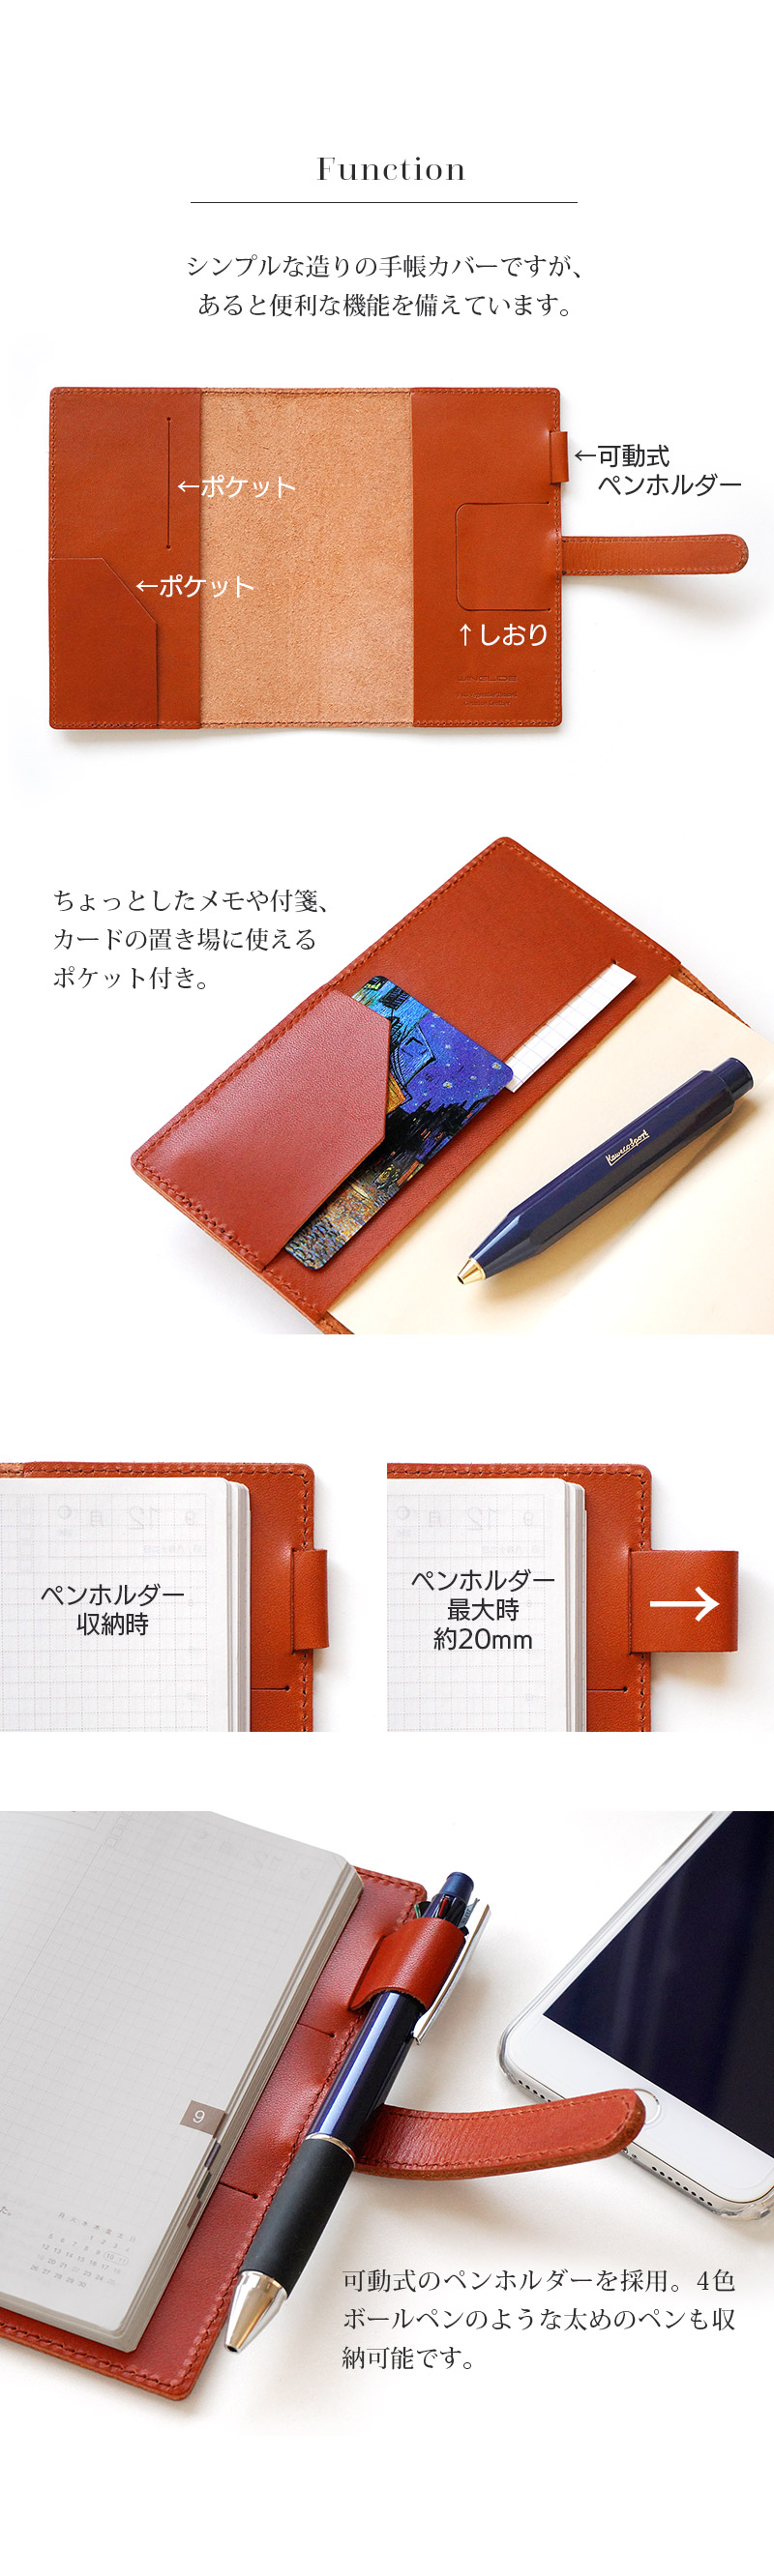 シンプルな造りの手帳カバー。カードポケット付き。稼働式ペンホルダー。